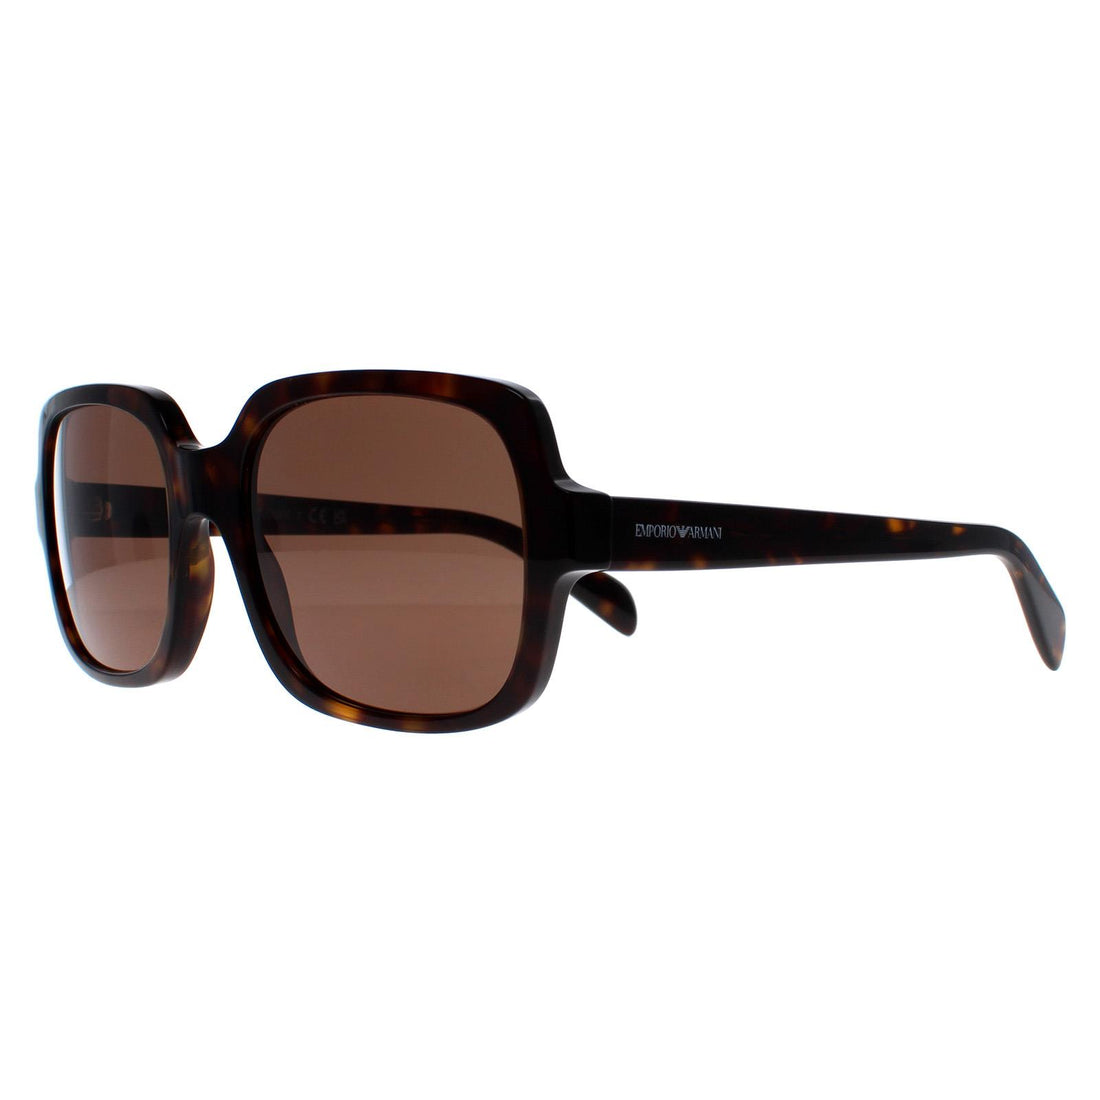 Emporio Armani EA4195 Sunglasses